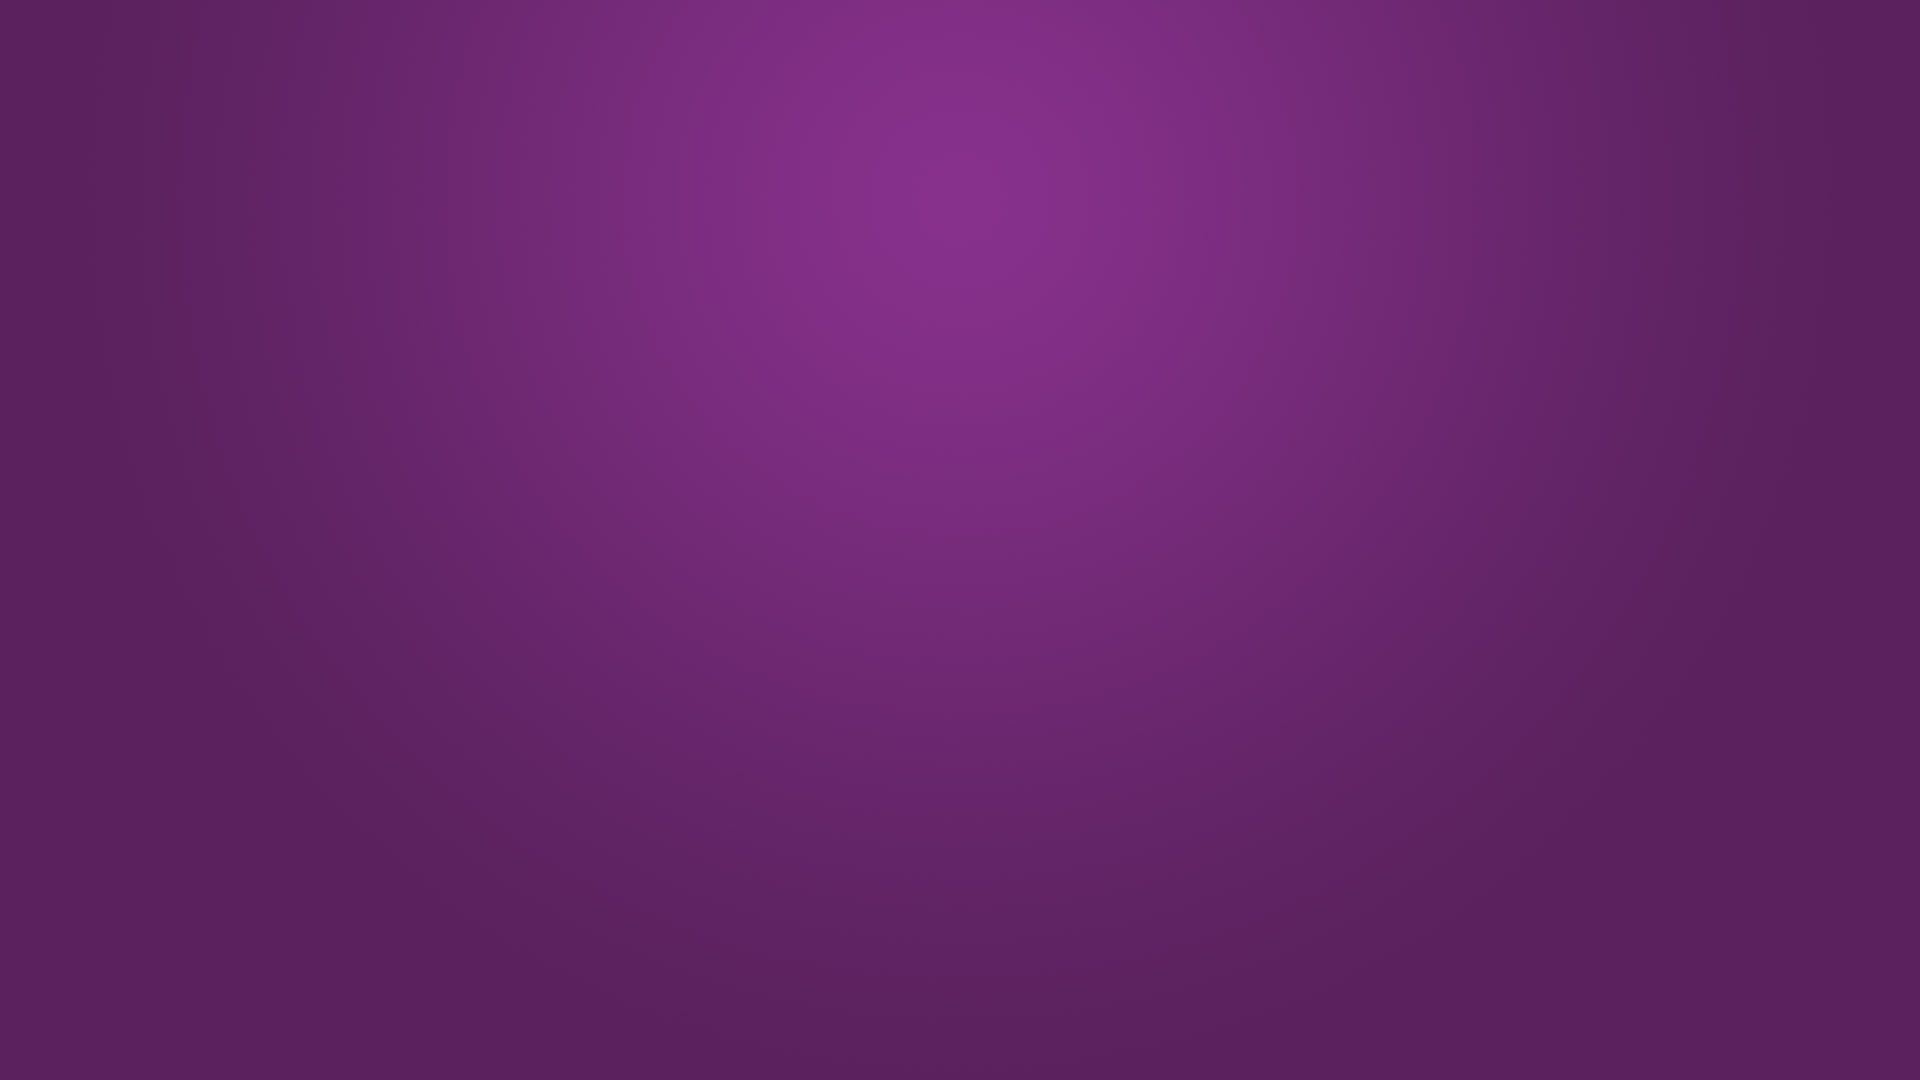 Purple Background 52 Background. Wallruru